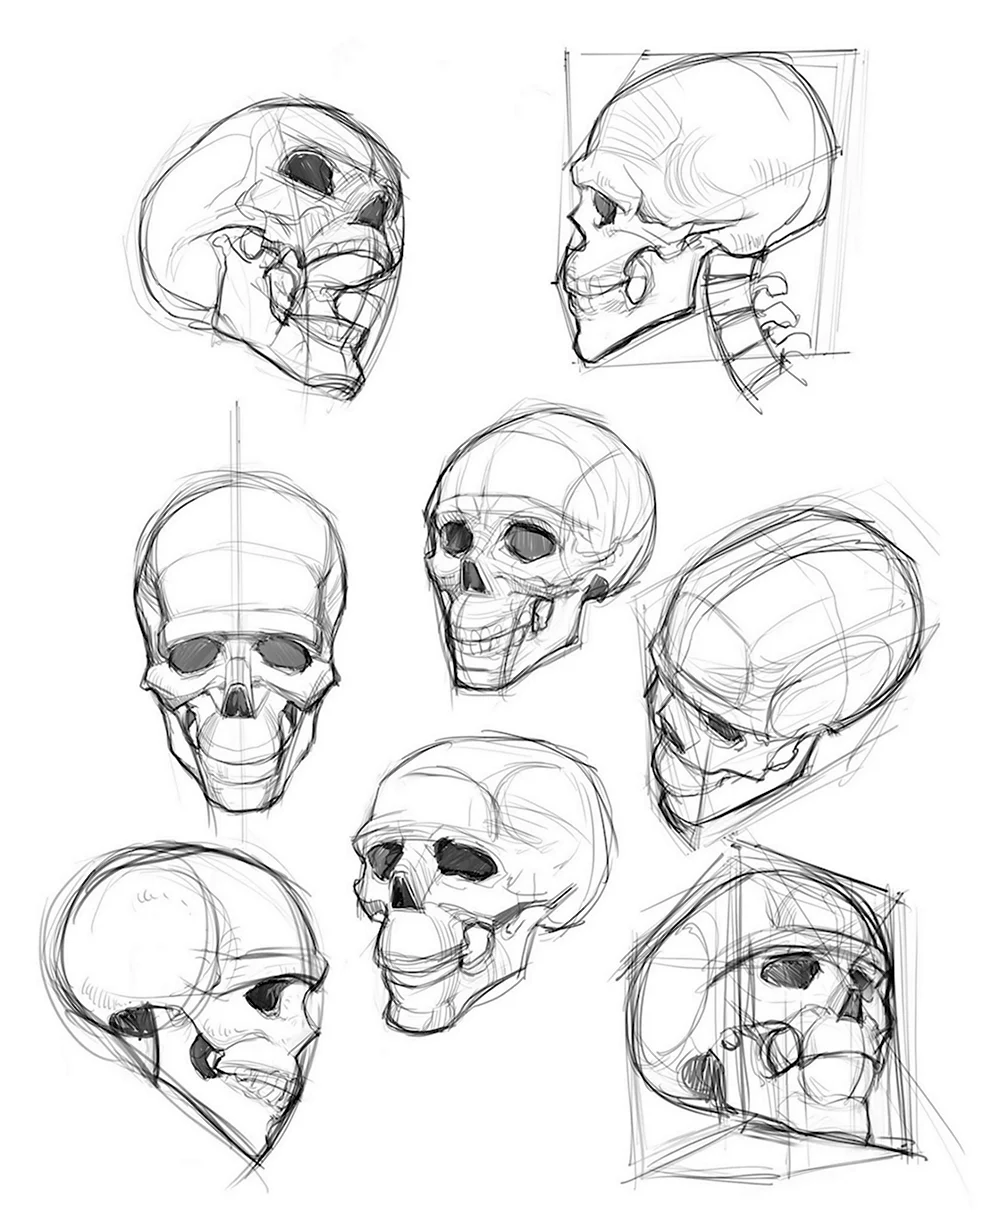 Референс черепа человека построение для художника